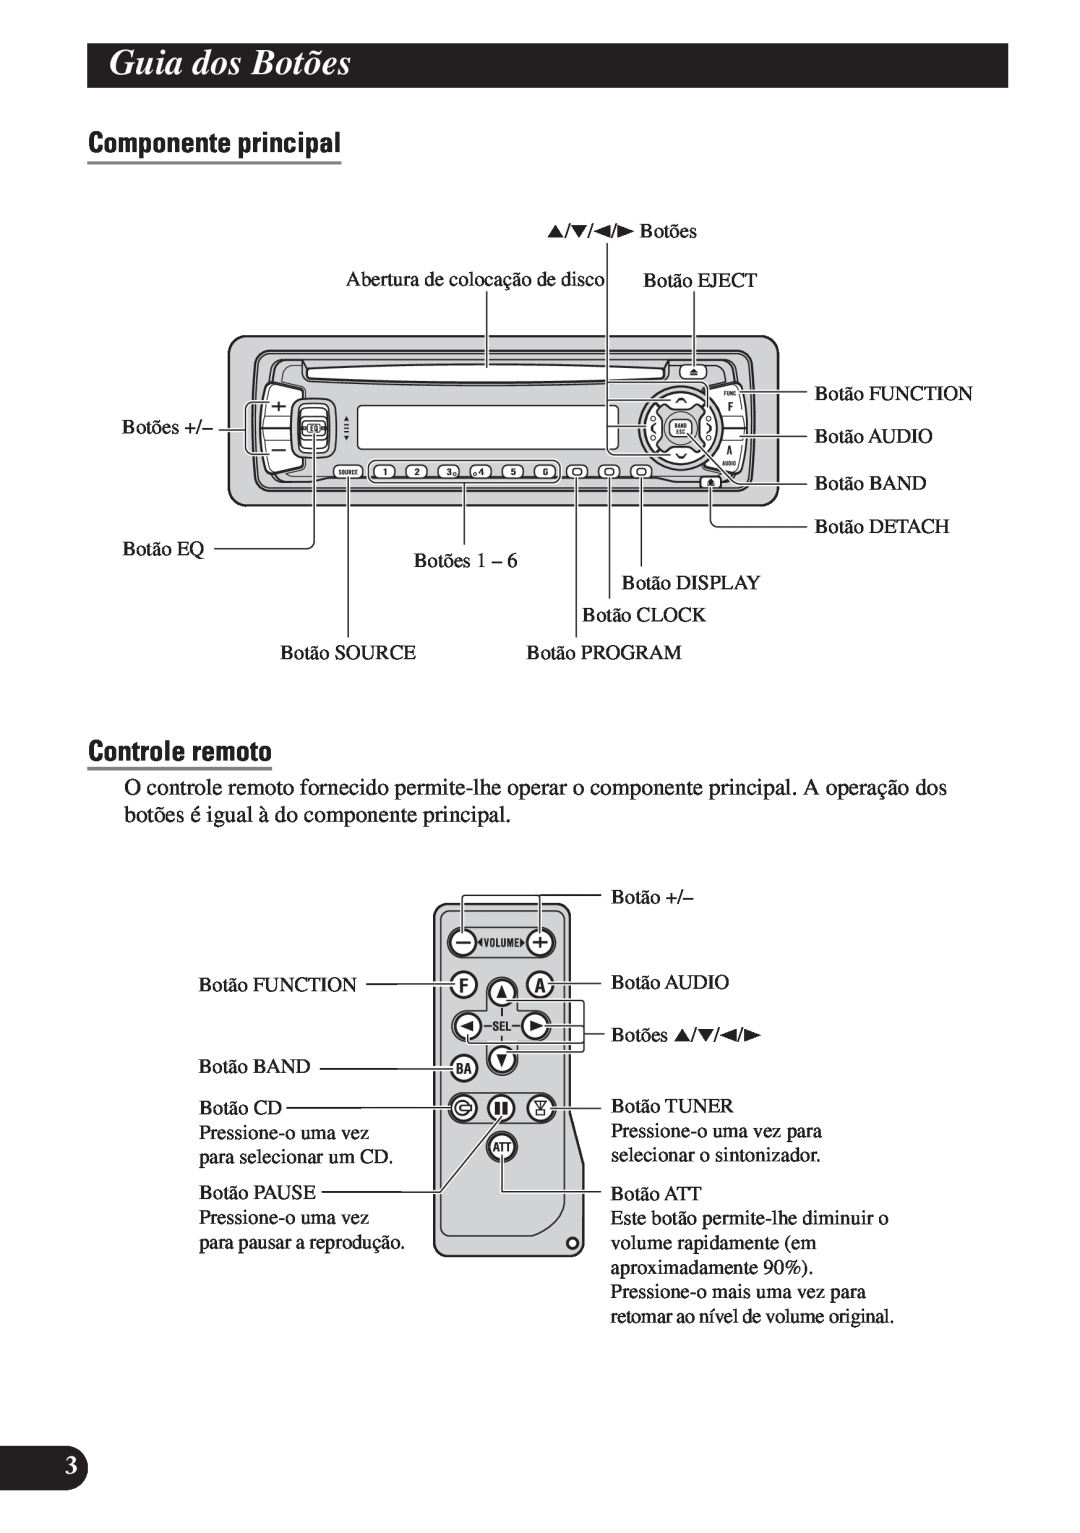 Pioneer DEH-P4150 operation manual Guia dos Botões, Componente principal, Controle remoto 